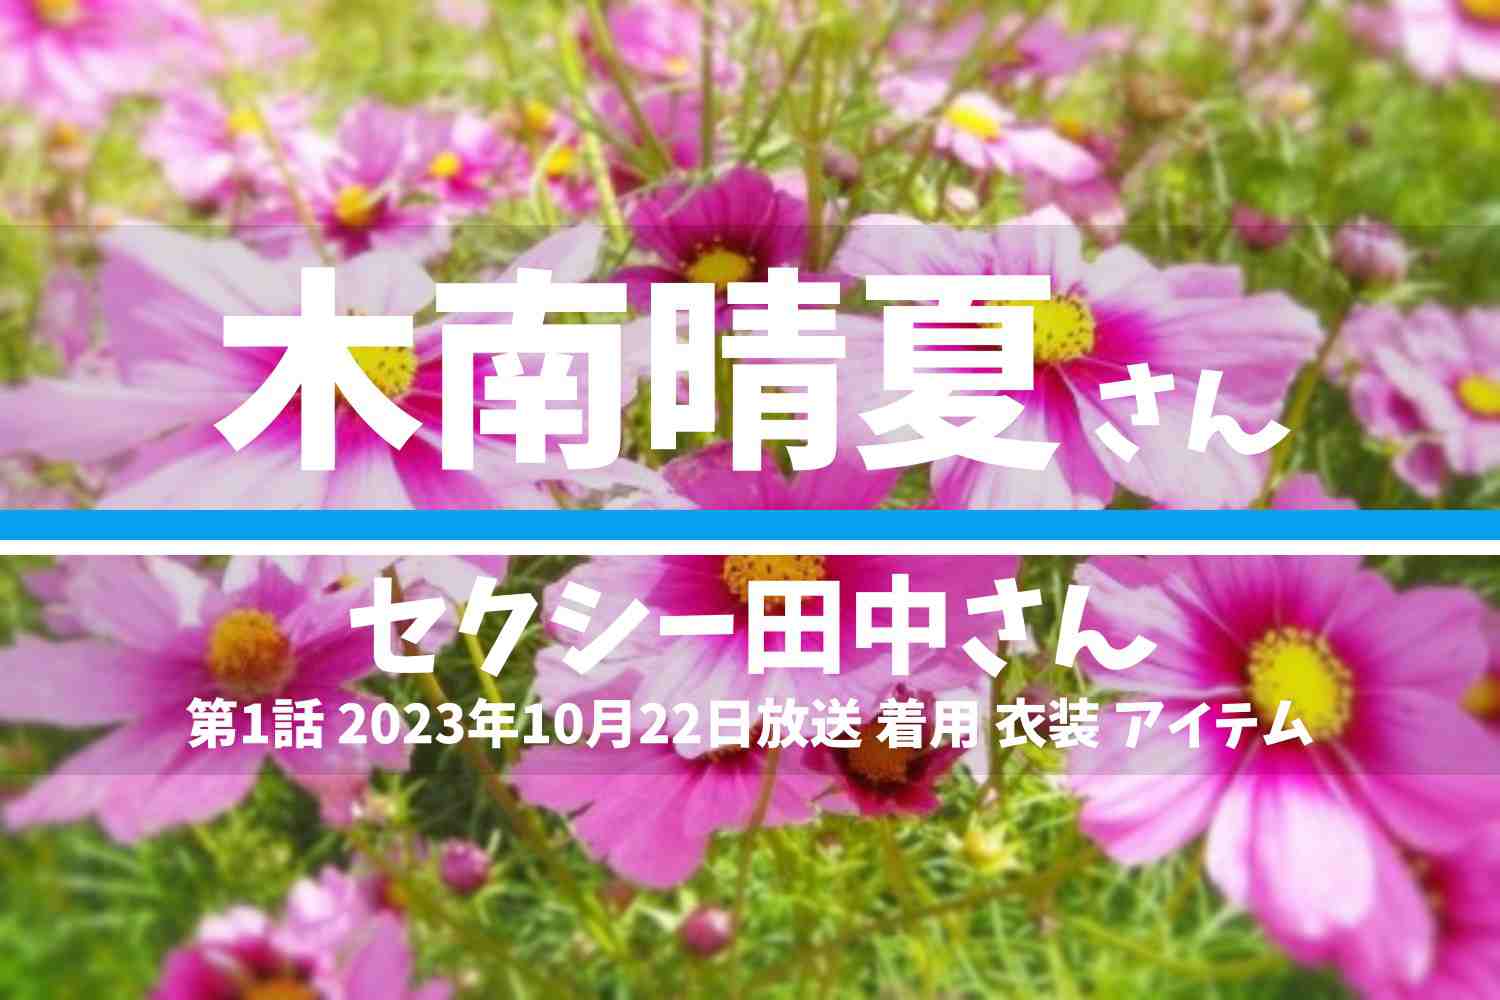 セクシー田中さん 木南晴夏さん テレビドラマ 衣装 2023年10月22日放送